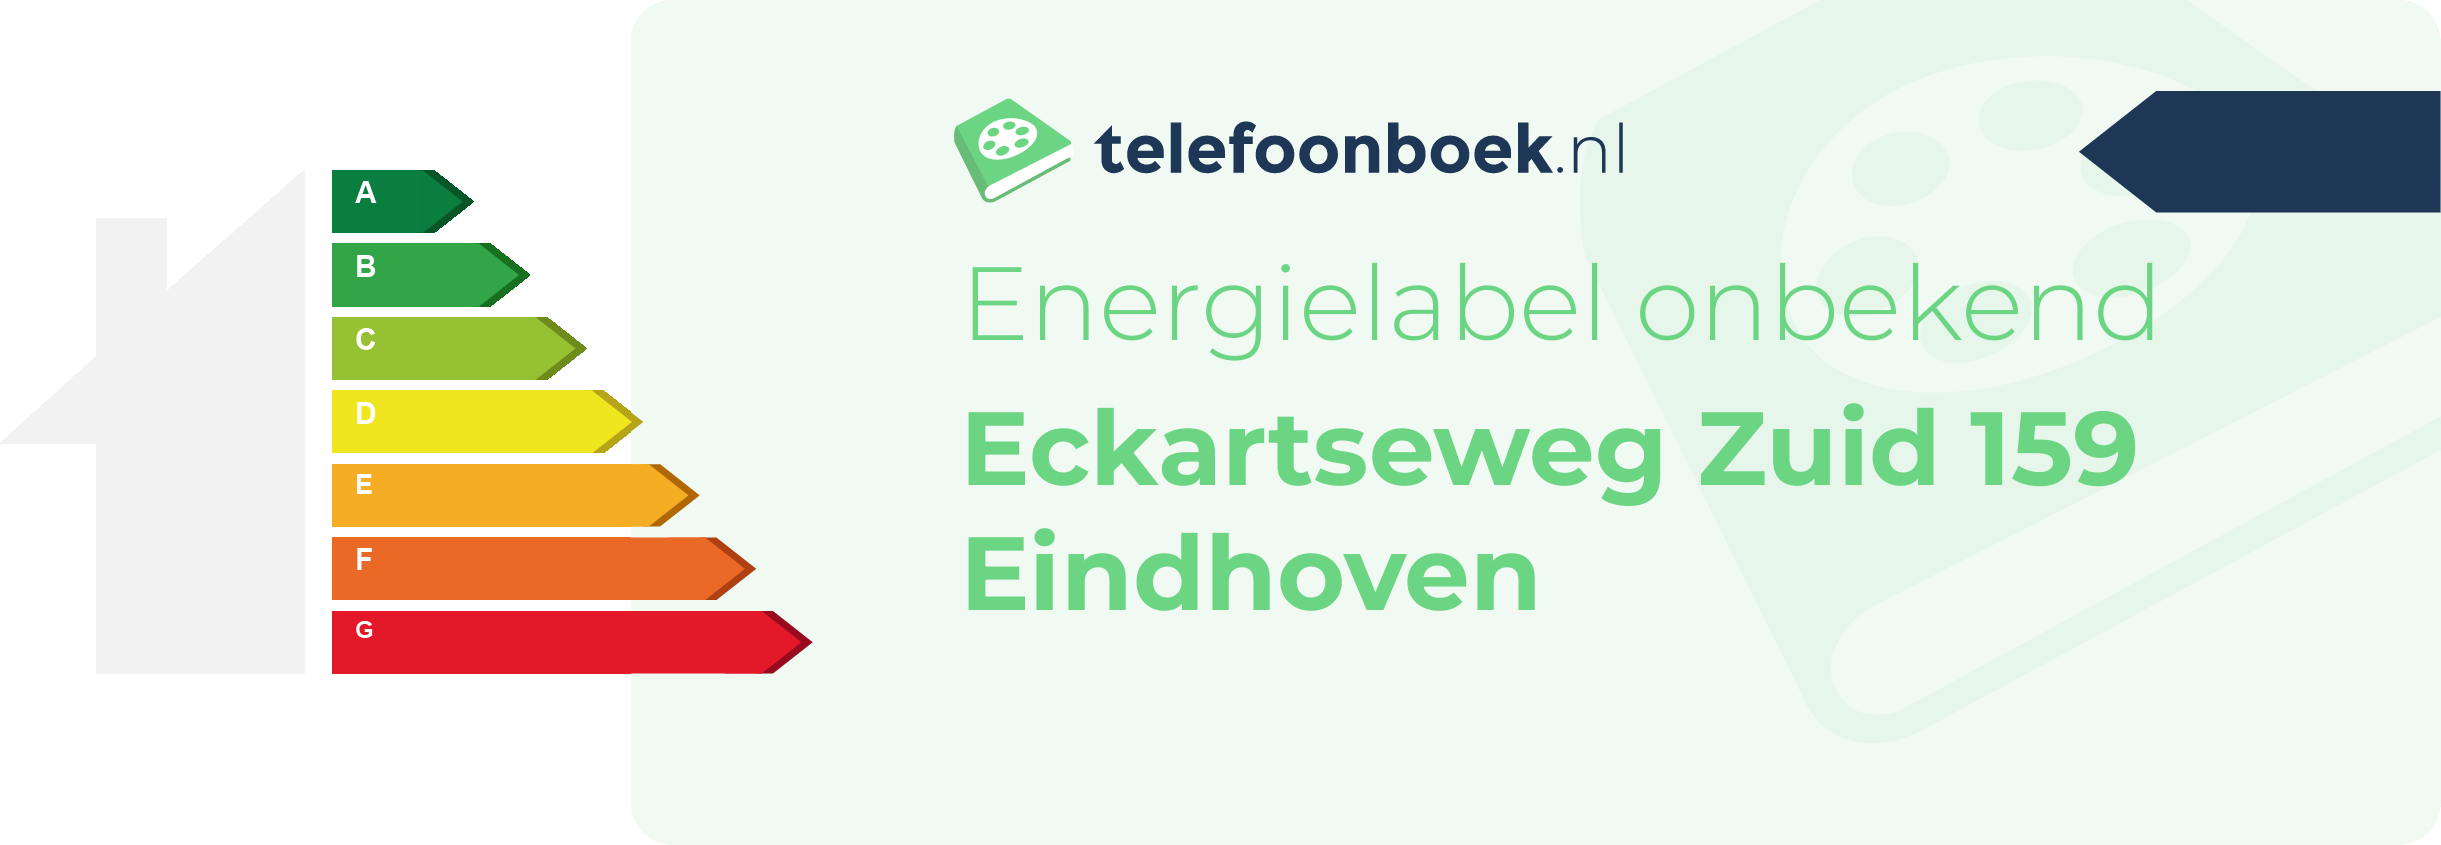 Energielabel Eckartseweg Zuid 159 Eindhoven